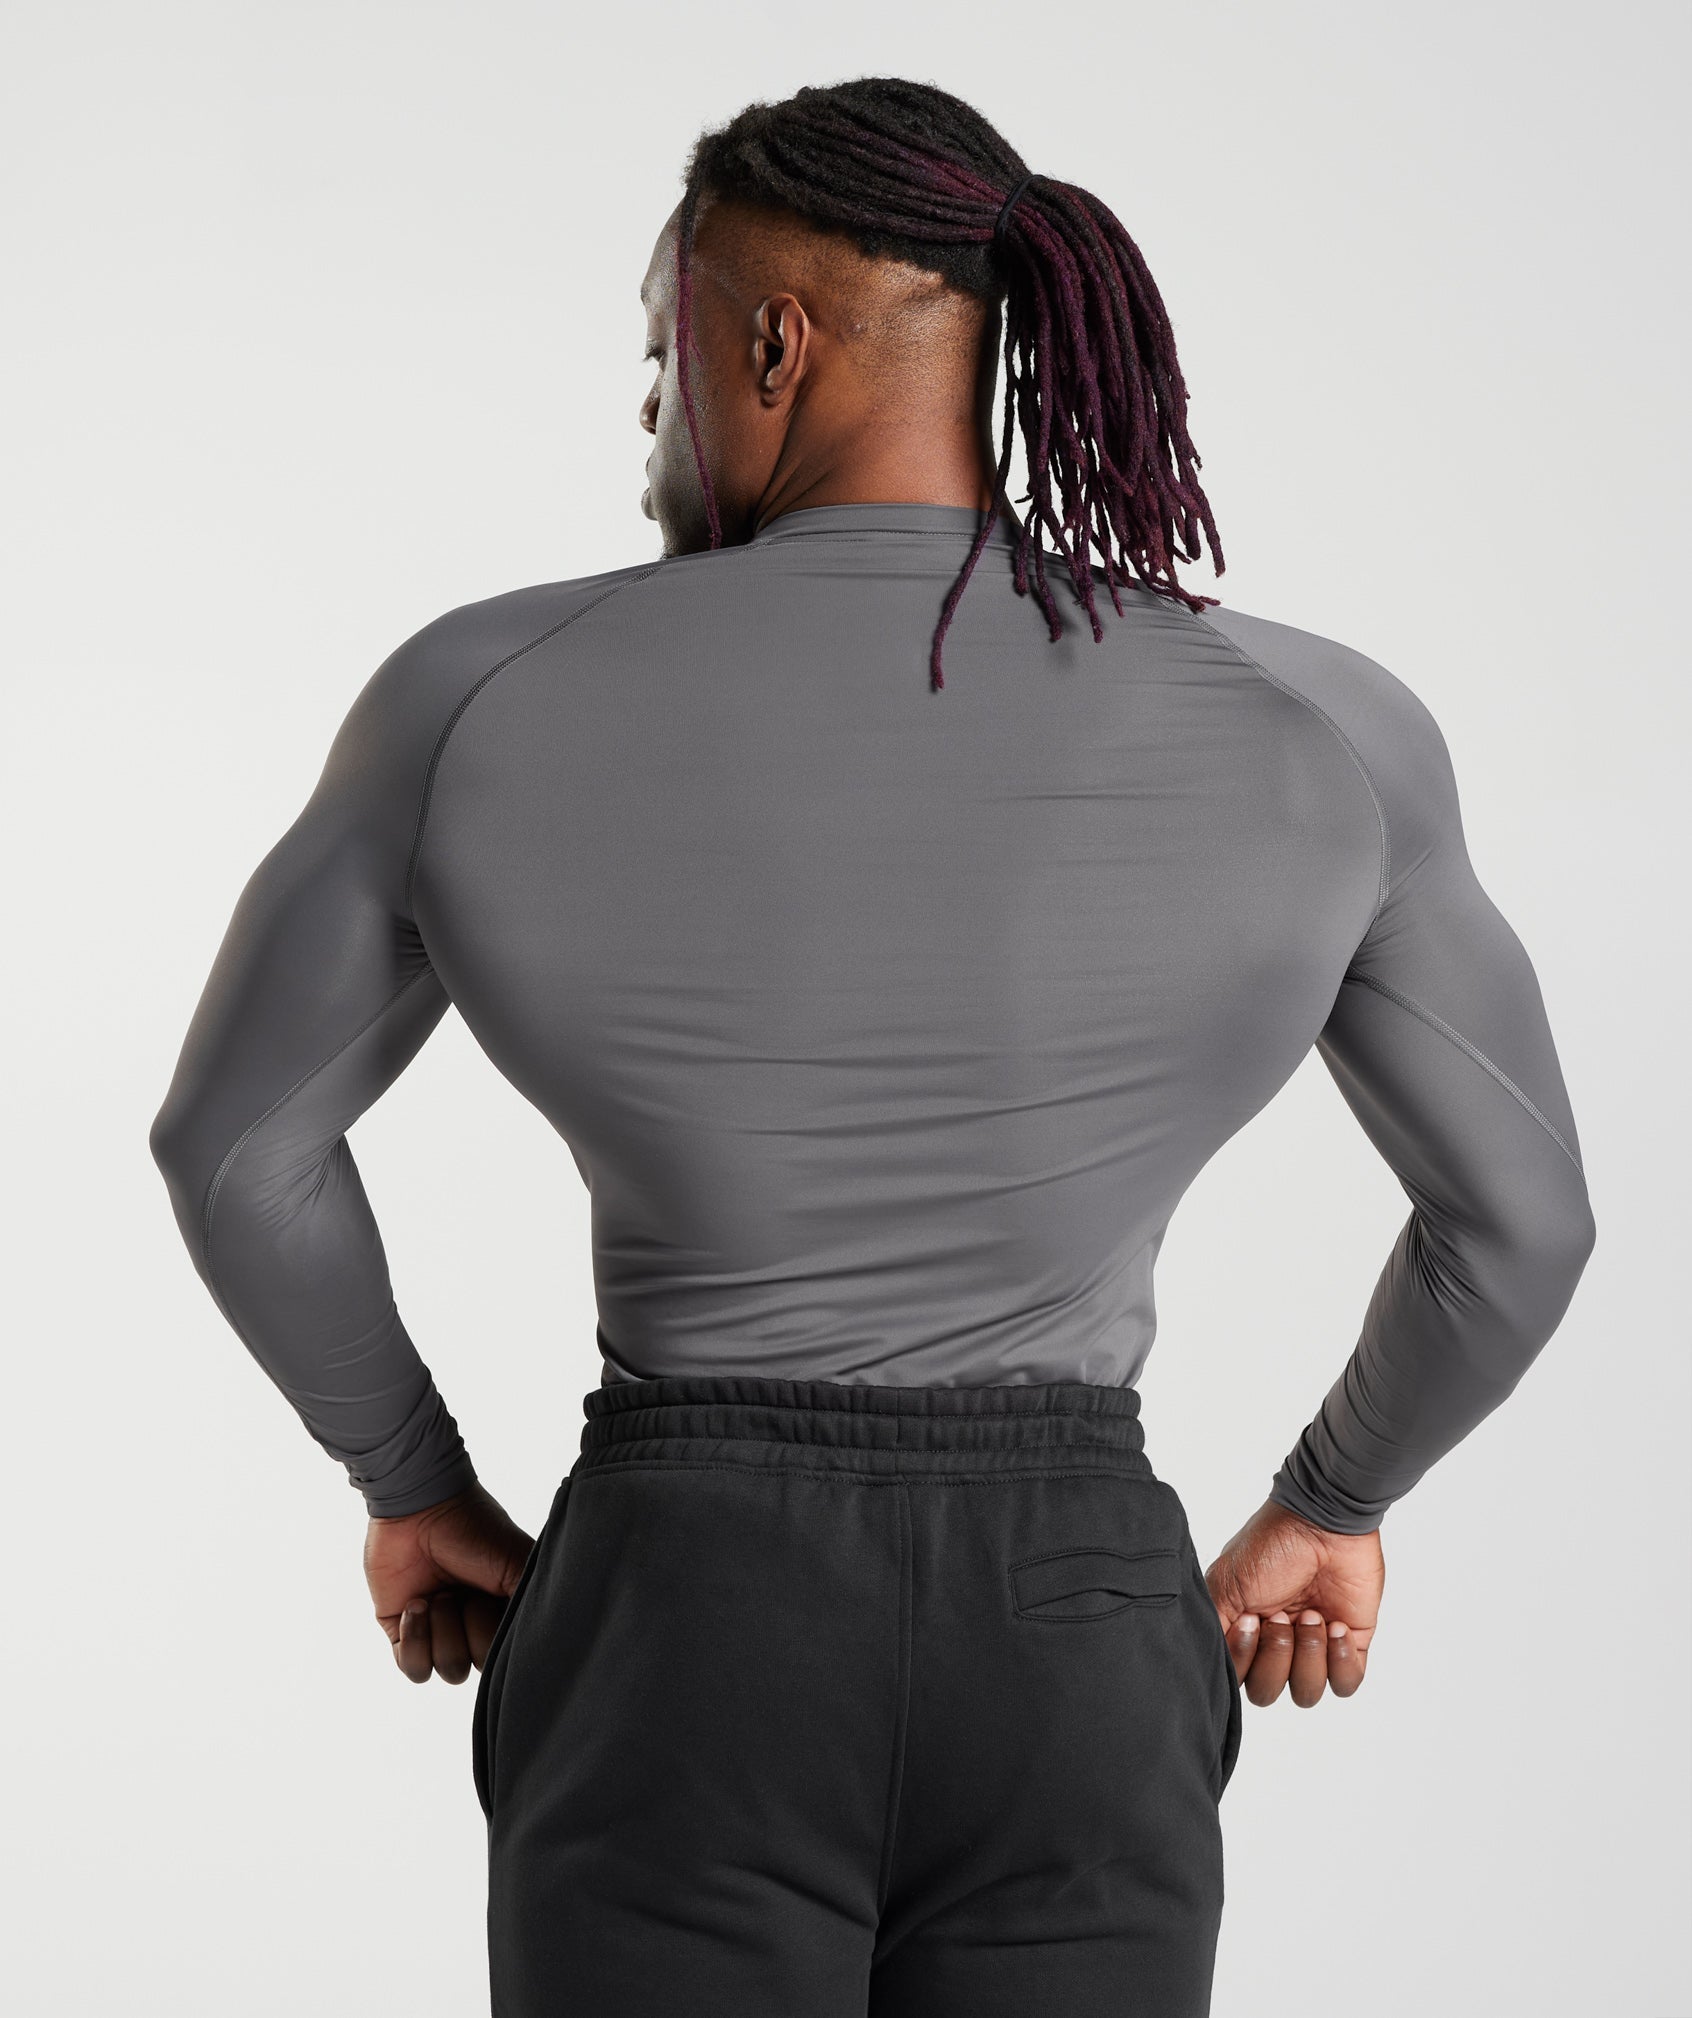 Gymshark Element Baselayer Leggings - Black  Mens workout clothes, Black  leggings, Gymshark